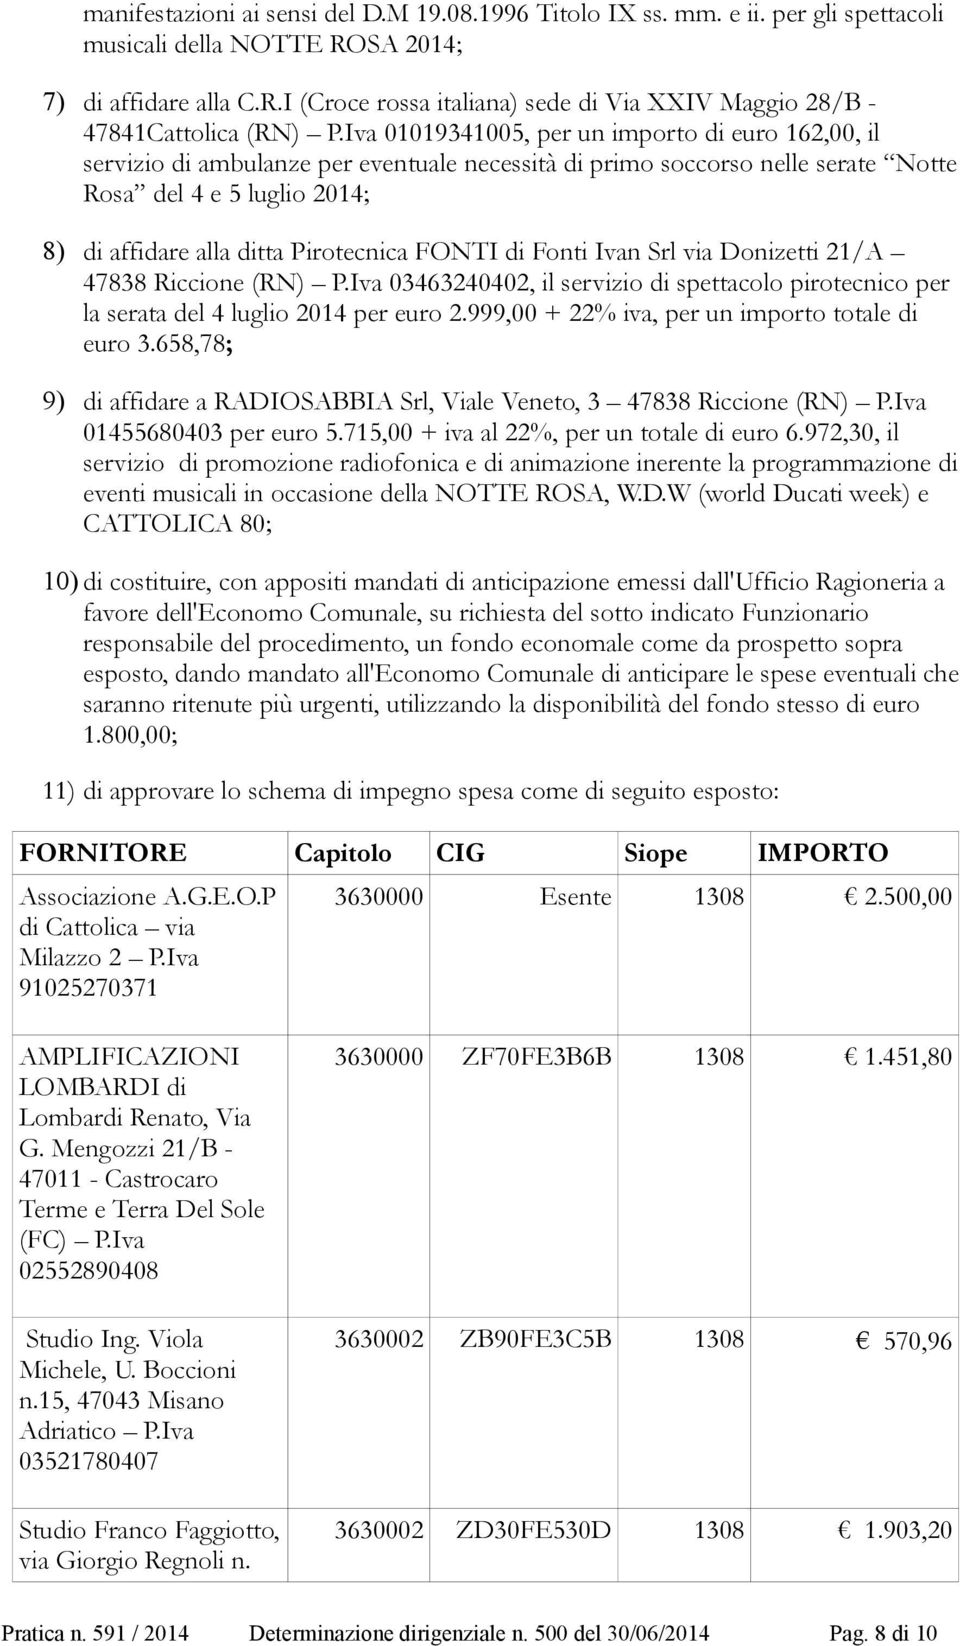 FONTI di Fonti Ivan Srl via Donizetti 21/A 47838 Riccione (RN) P.Iva 03463240402, il servizio di spettacolo pirotecnico per la serata del 4 luglio 2014 per euro 2.